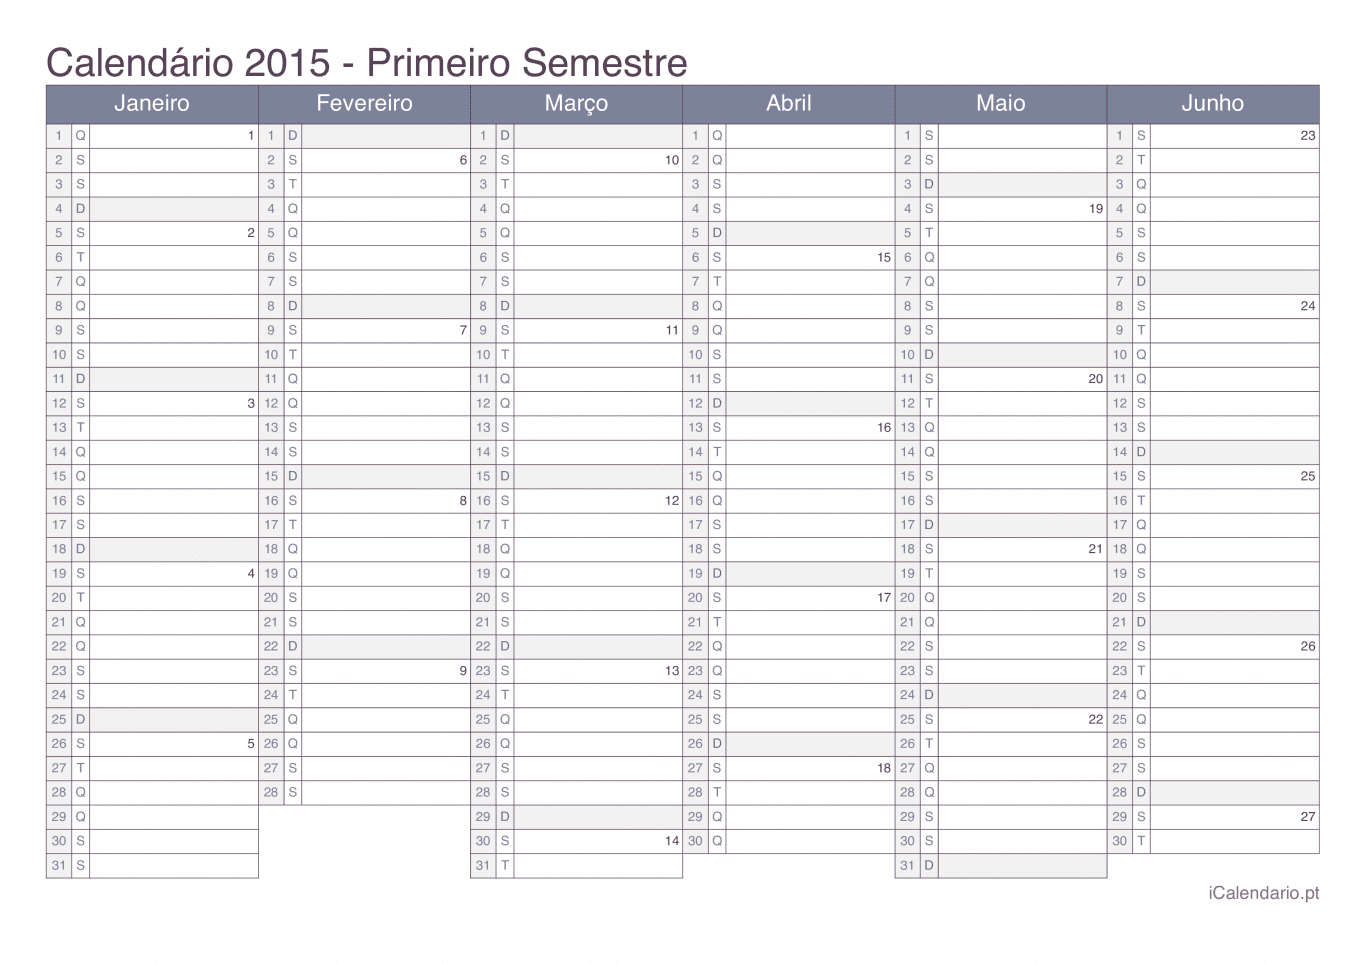 Calendário por semestre com números da semana 2015 - Office